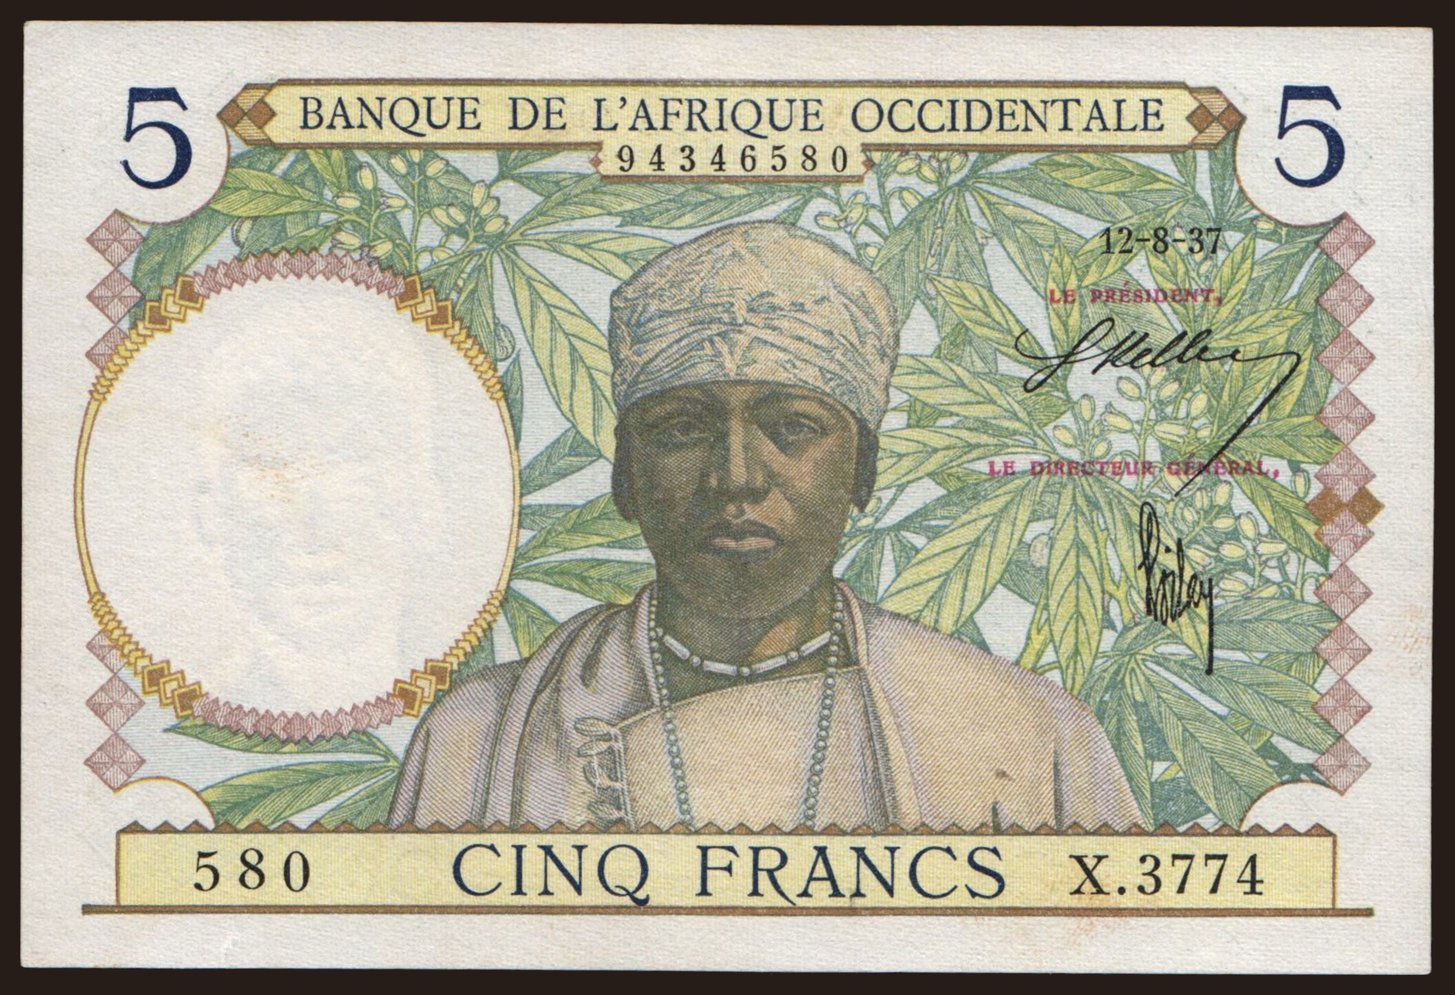 5 francs, 1937